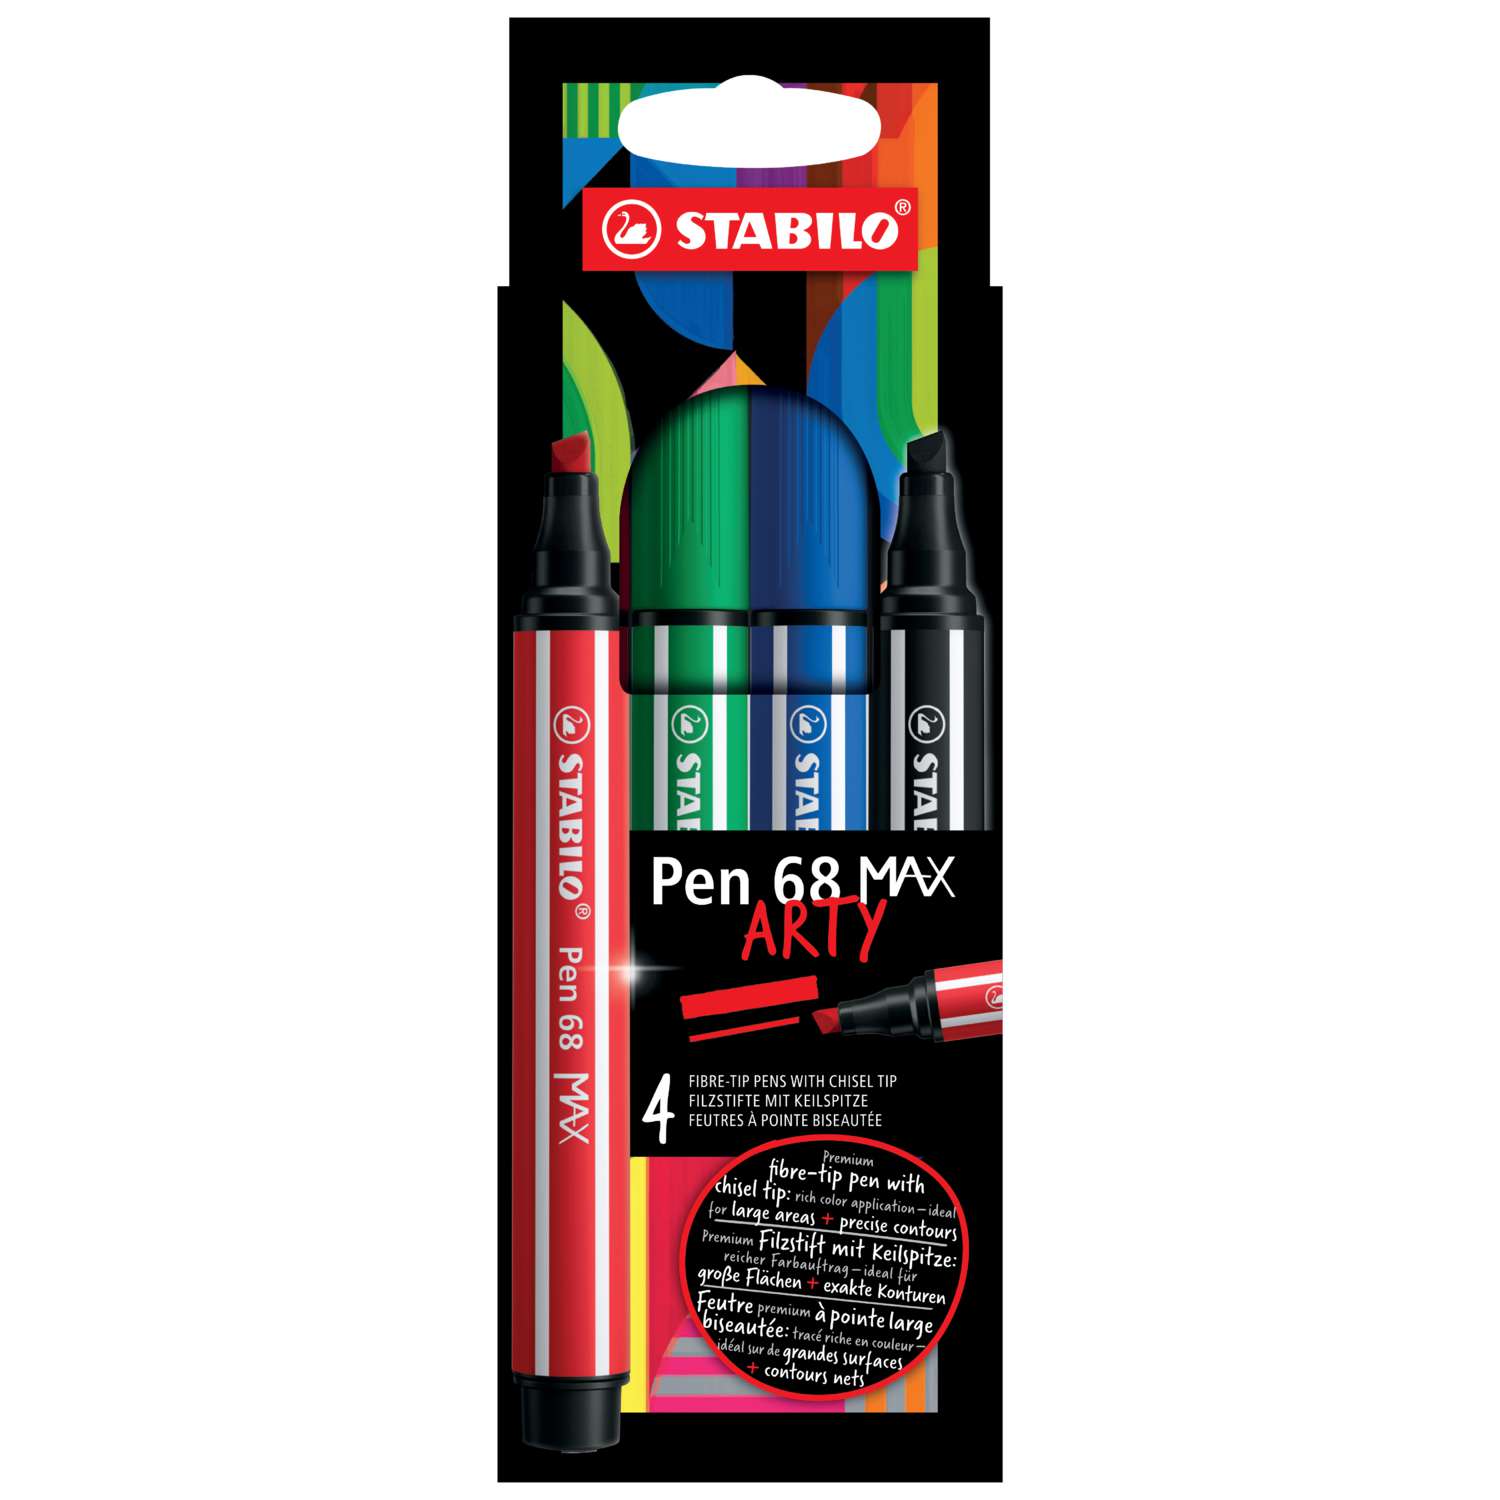 Stylo-feutre Pen 68 Brush STABILO Boite de 15